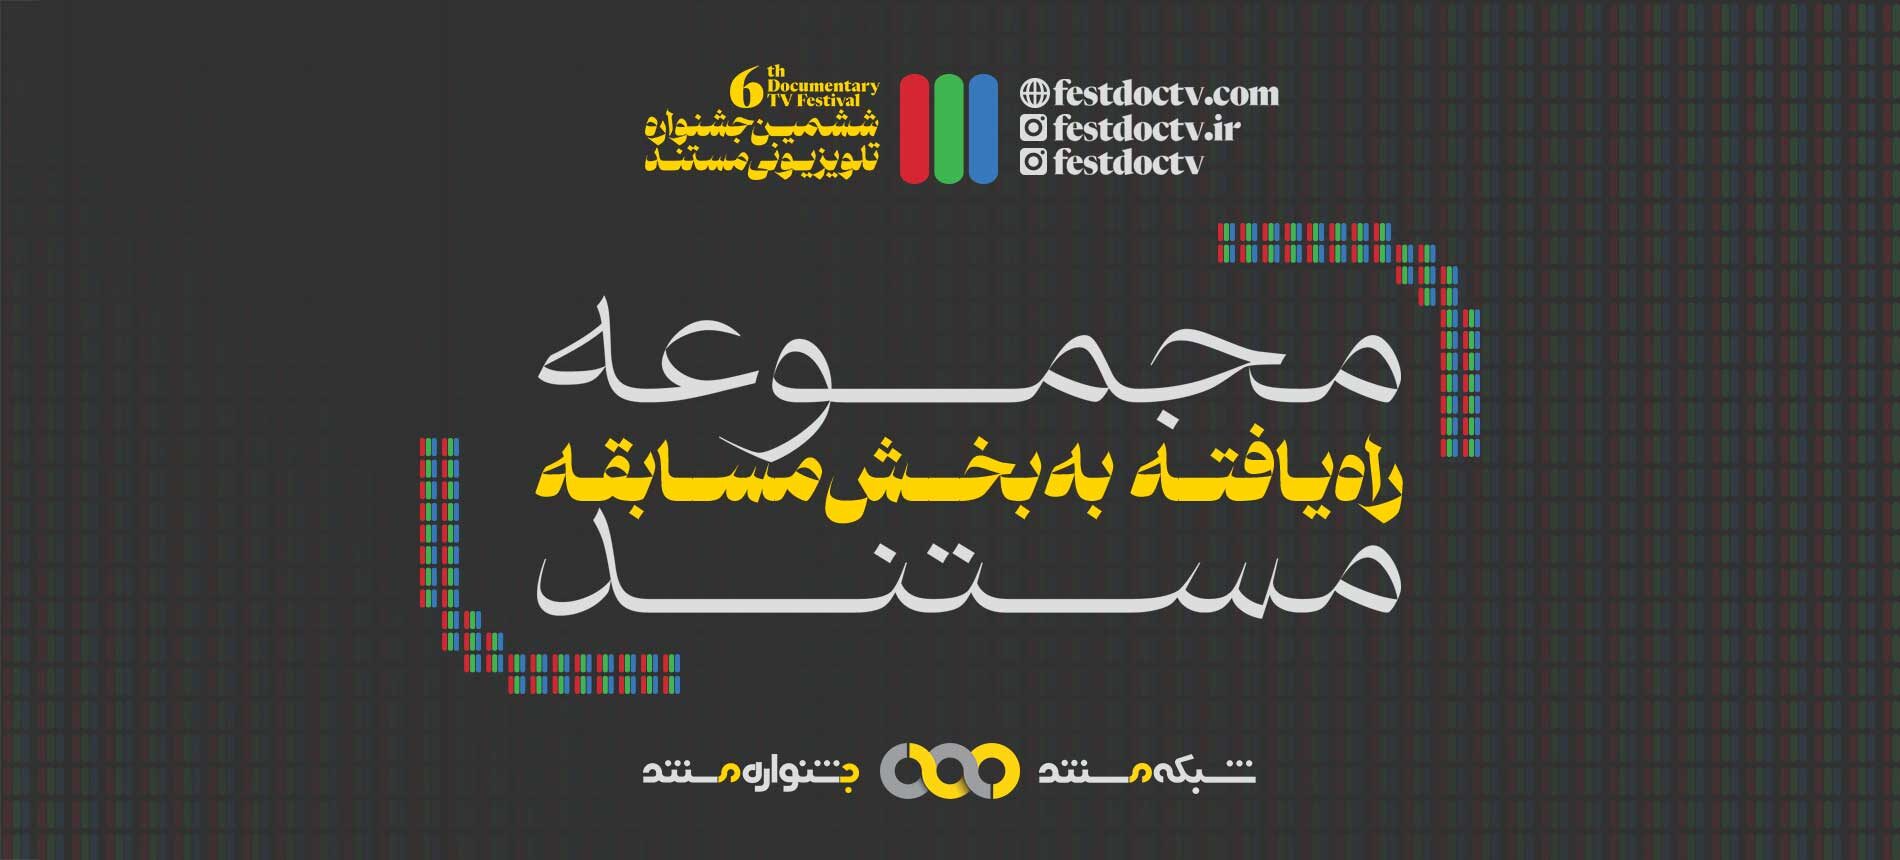 معرفی مجموعه مستندهای راه یافته به بخش مسابقه ششمین جشنواره تلویزیونی مستند